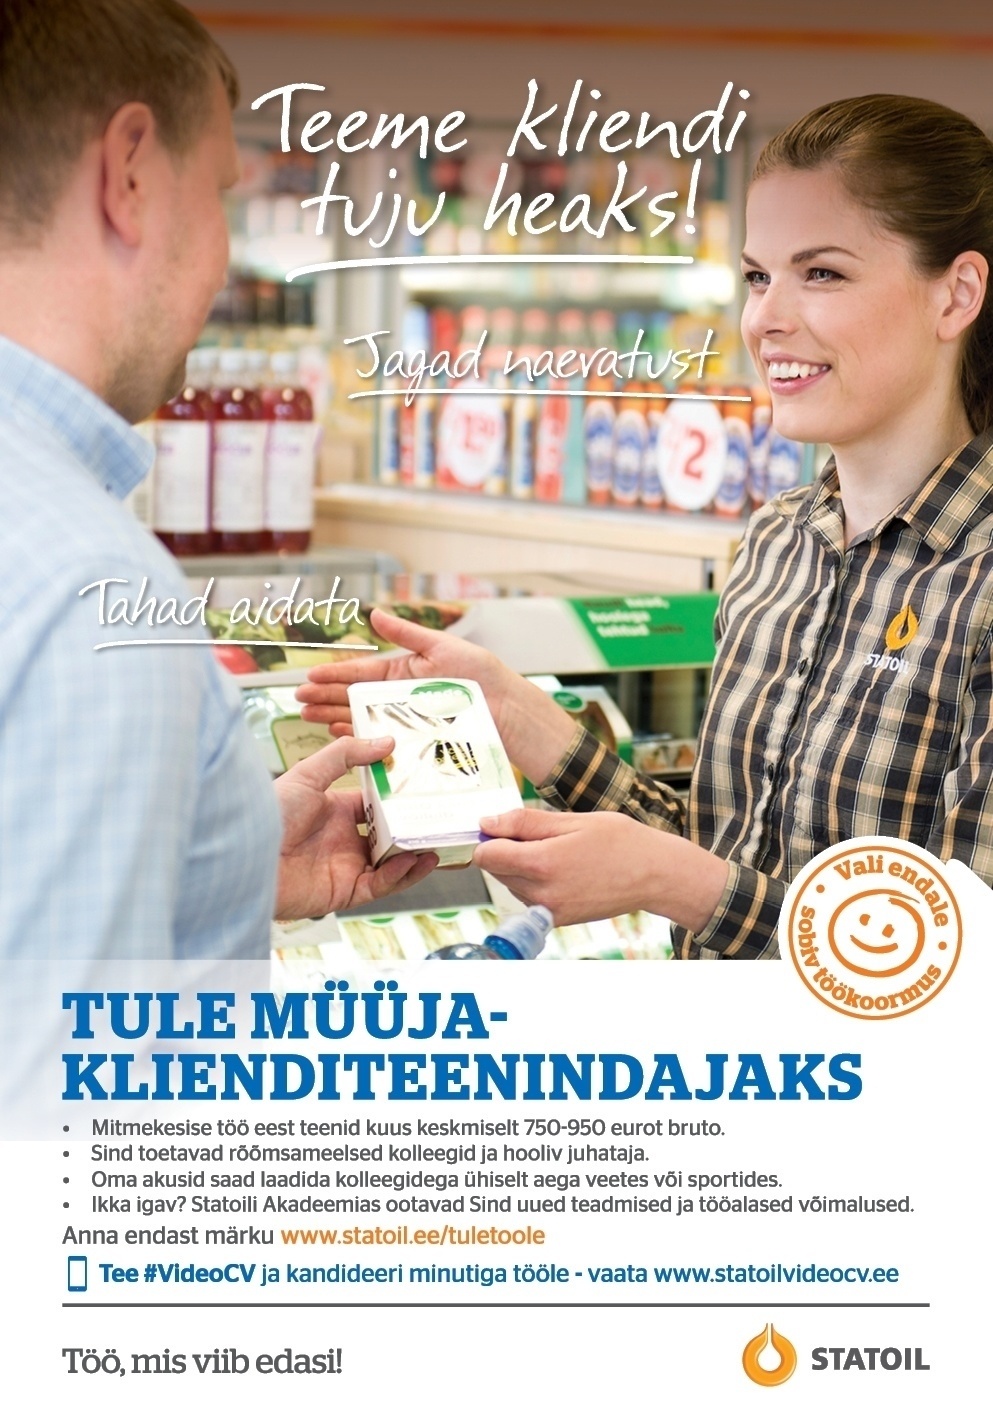 Circle K Eesti AS Müüja-klienditeenindaja Märjamaa teenindusjaama